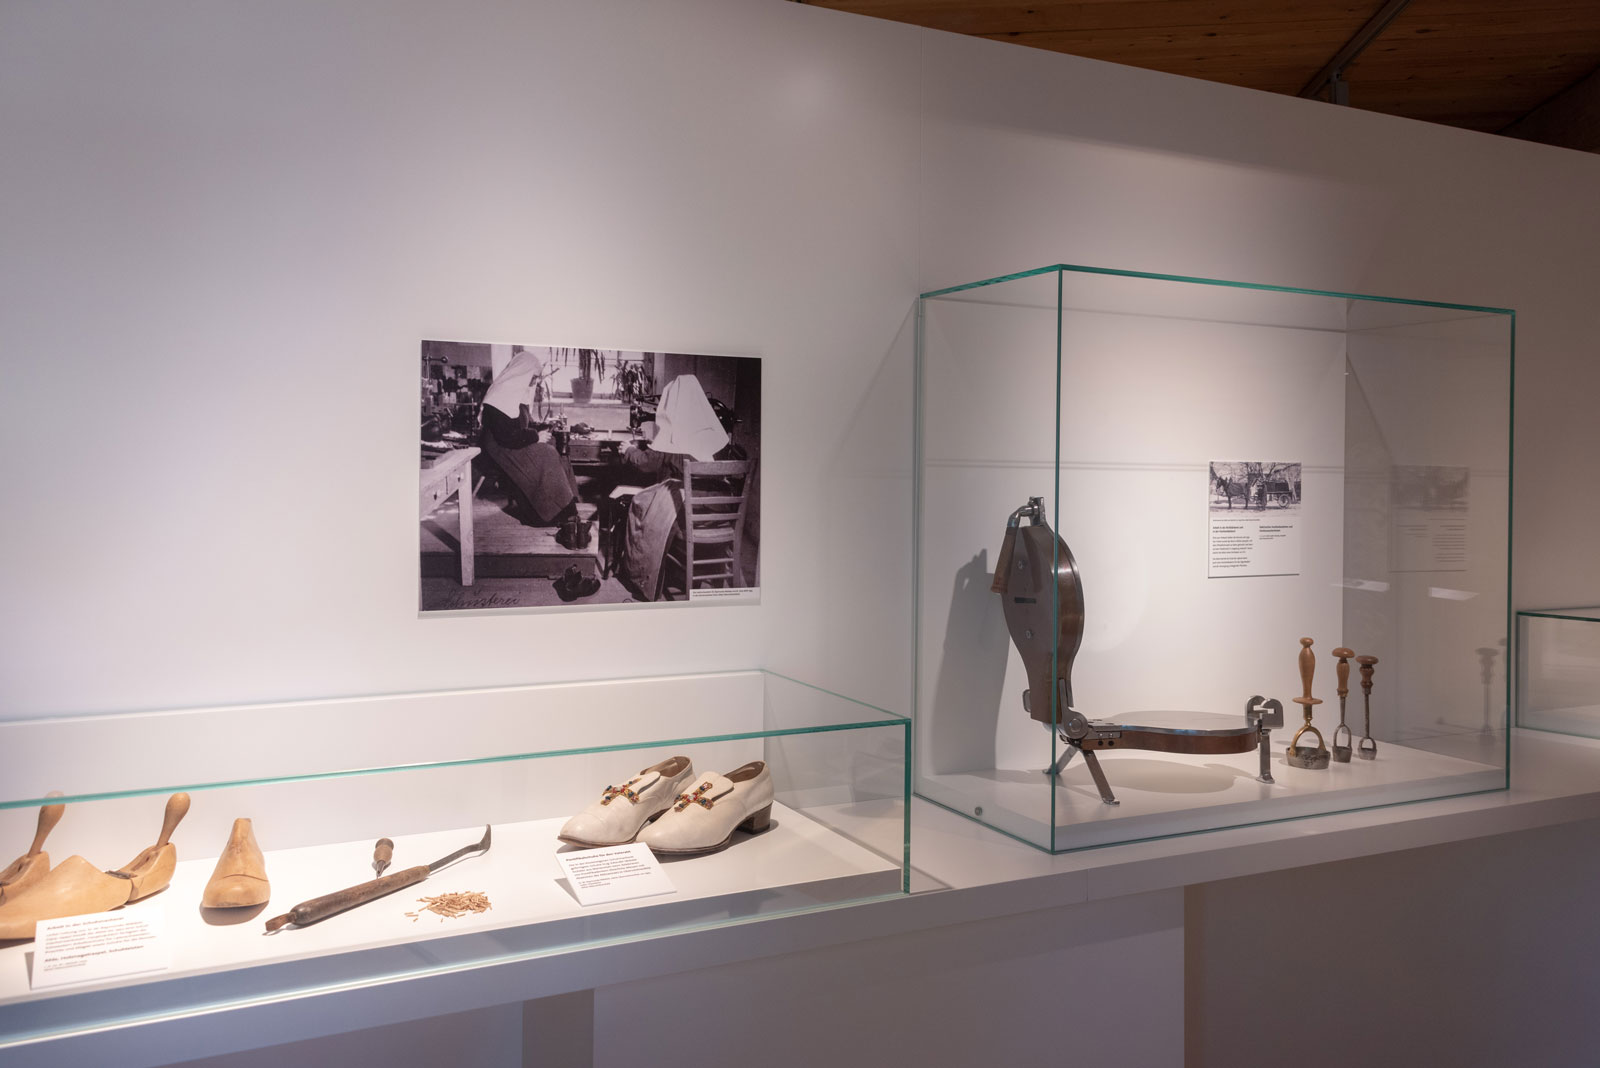 Das Referenzbild für Ausstellungsgestaltung aus der Dauerausstellung Tradition und Umbruch zeigt eine Exponatpräsentation mit Tischvitrinen und Vitrinenhaube.